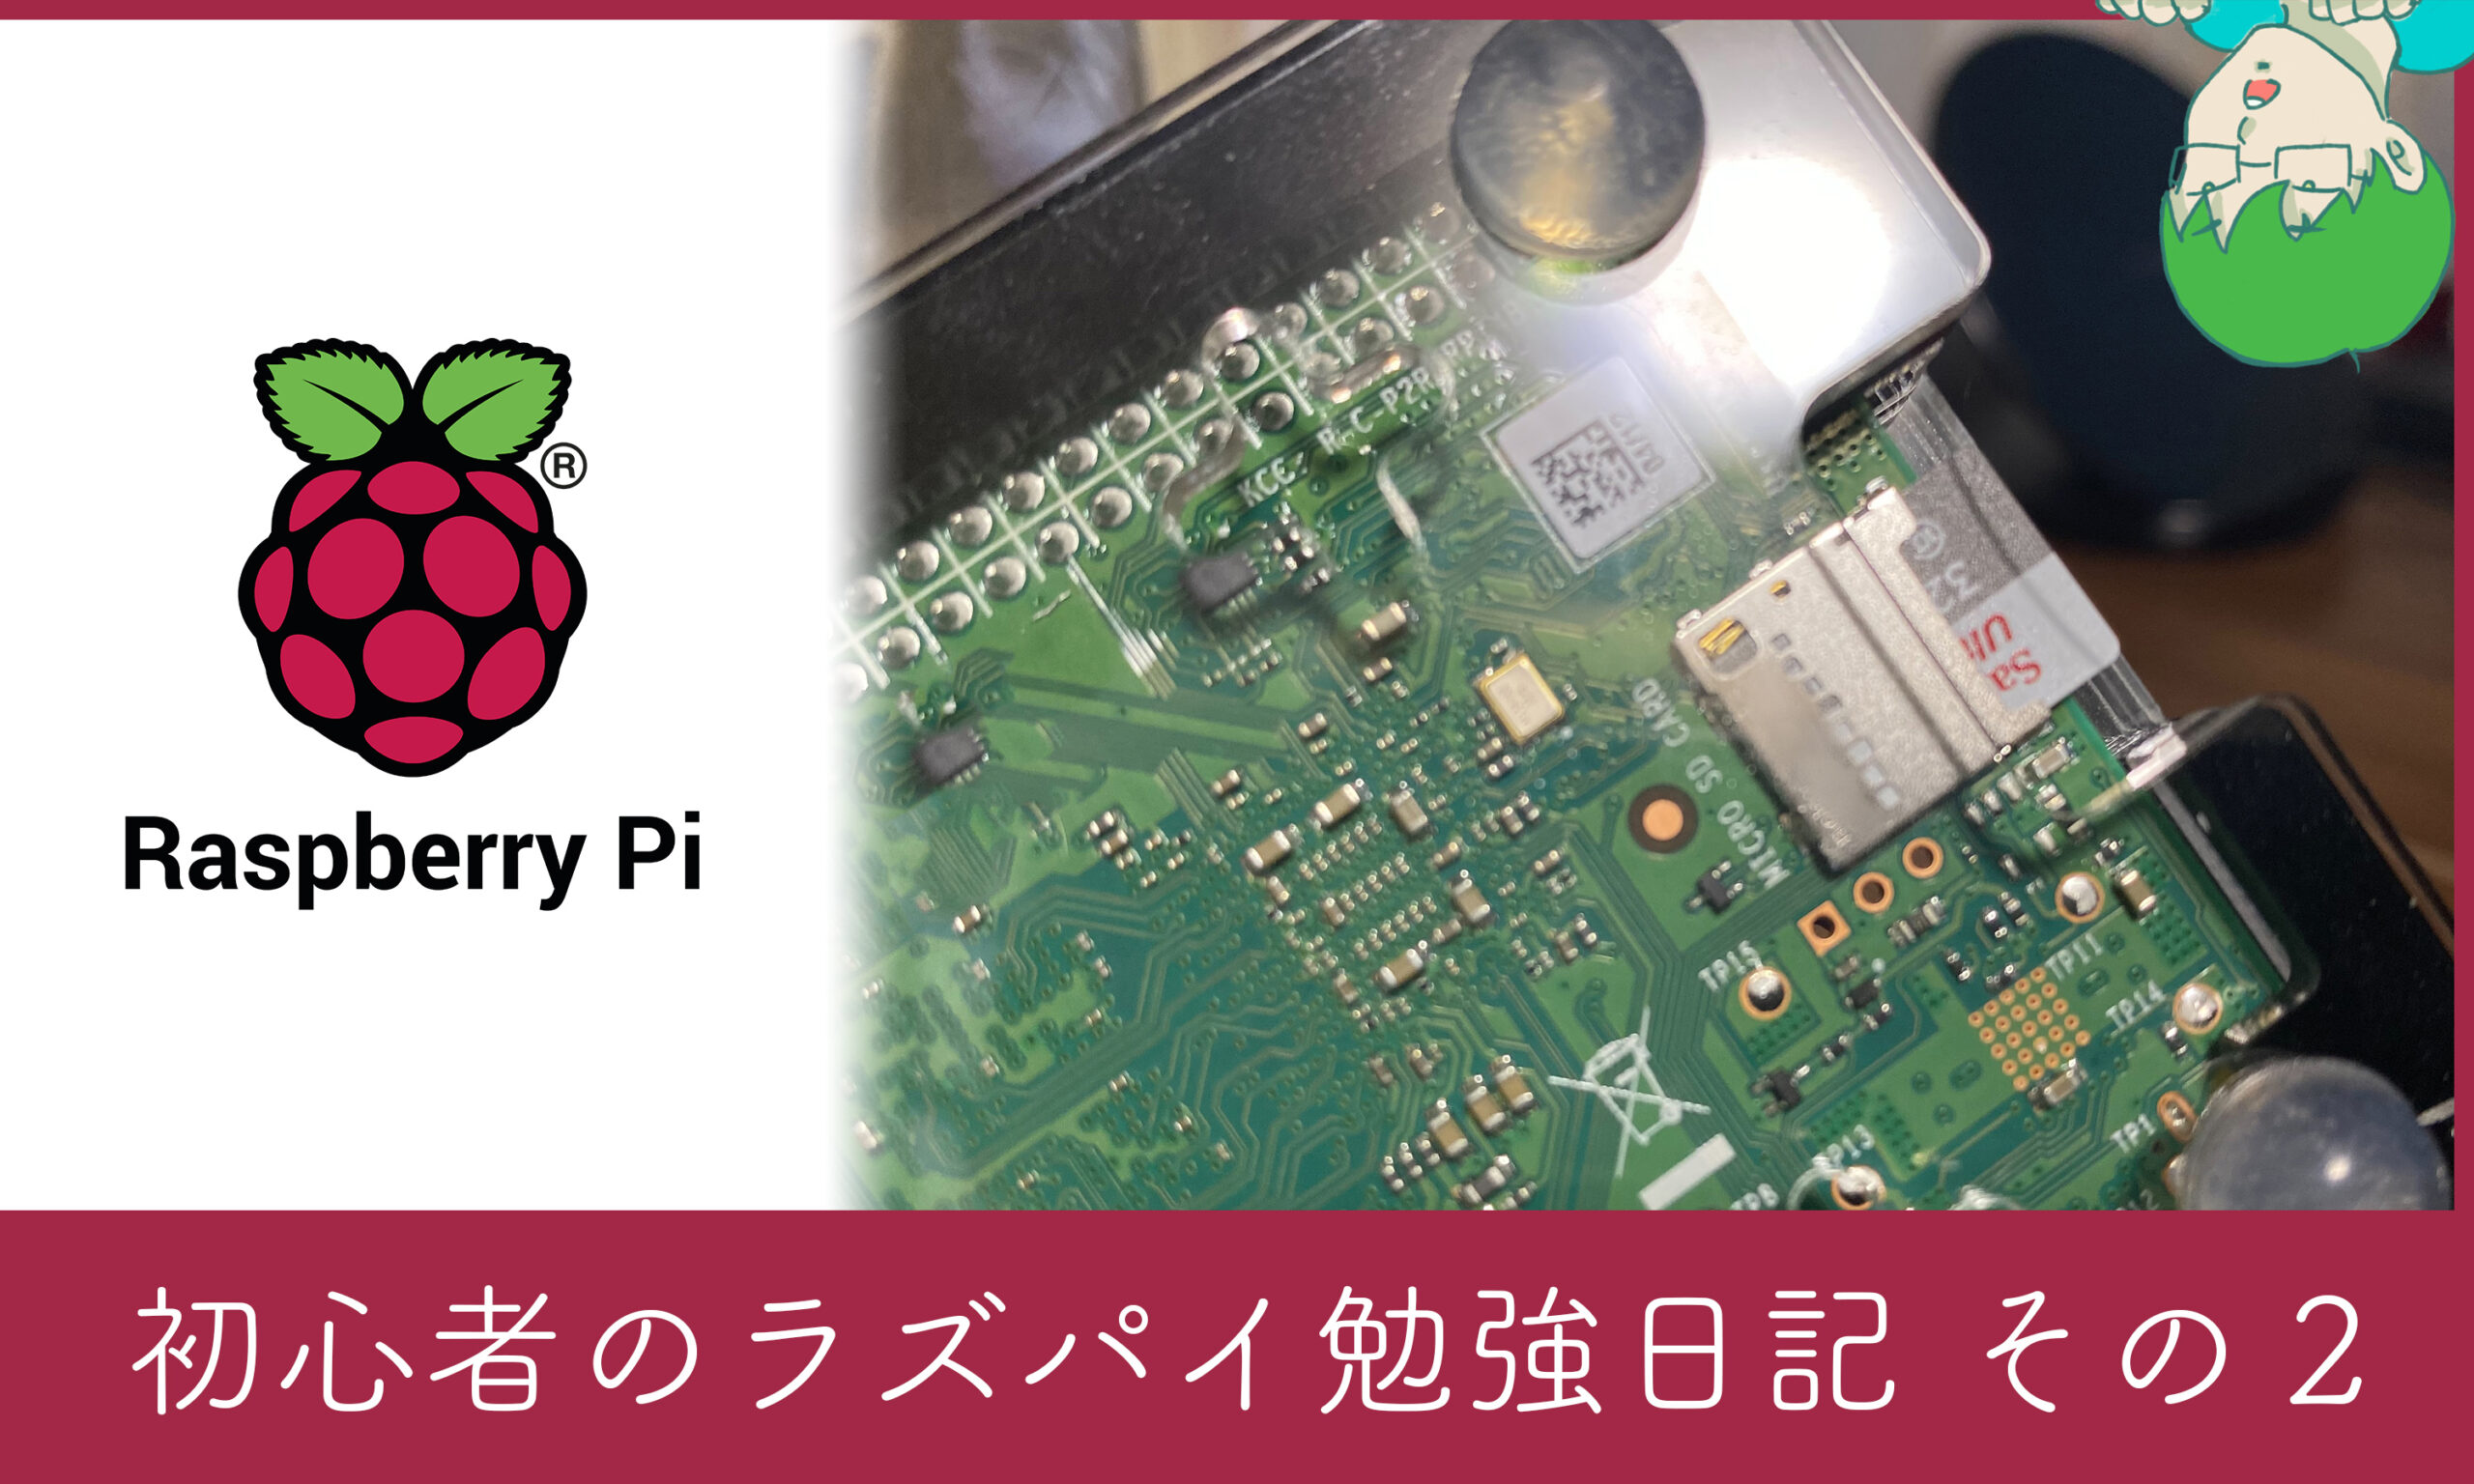 Raspberry PiのOS書き込みとラズパイ立ち上げ、設定。のボックス型リンクの画像